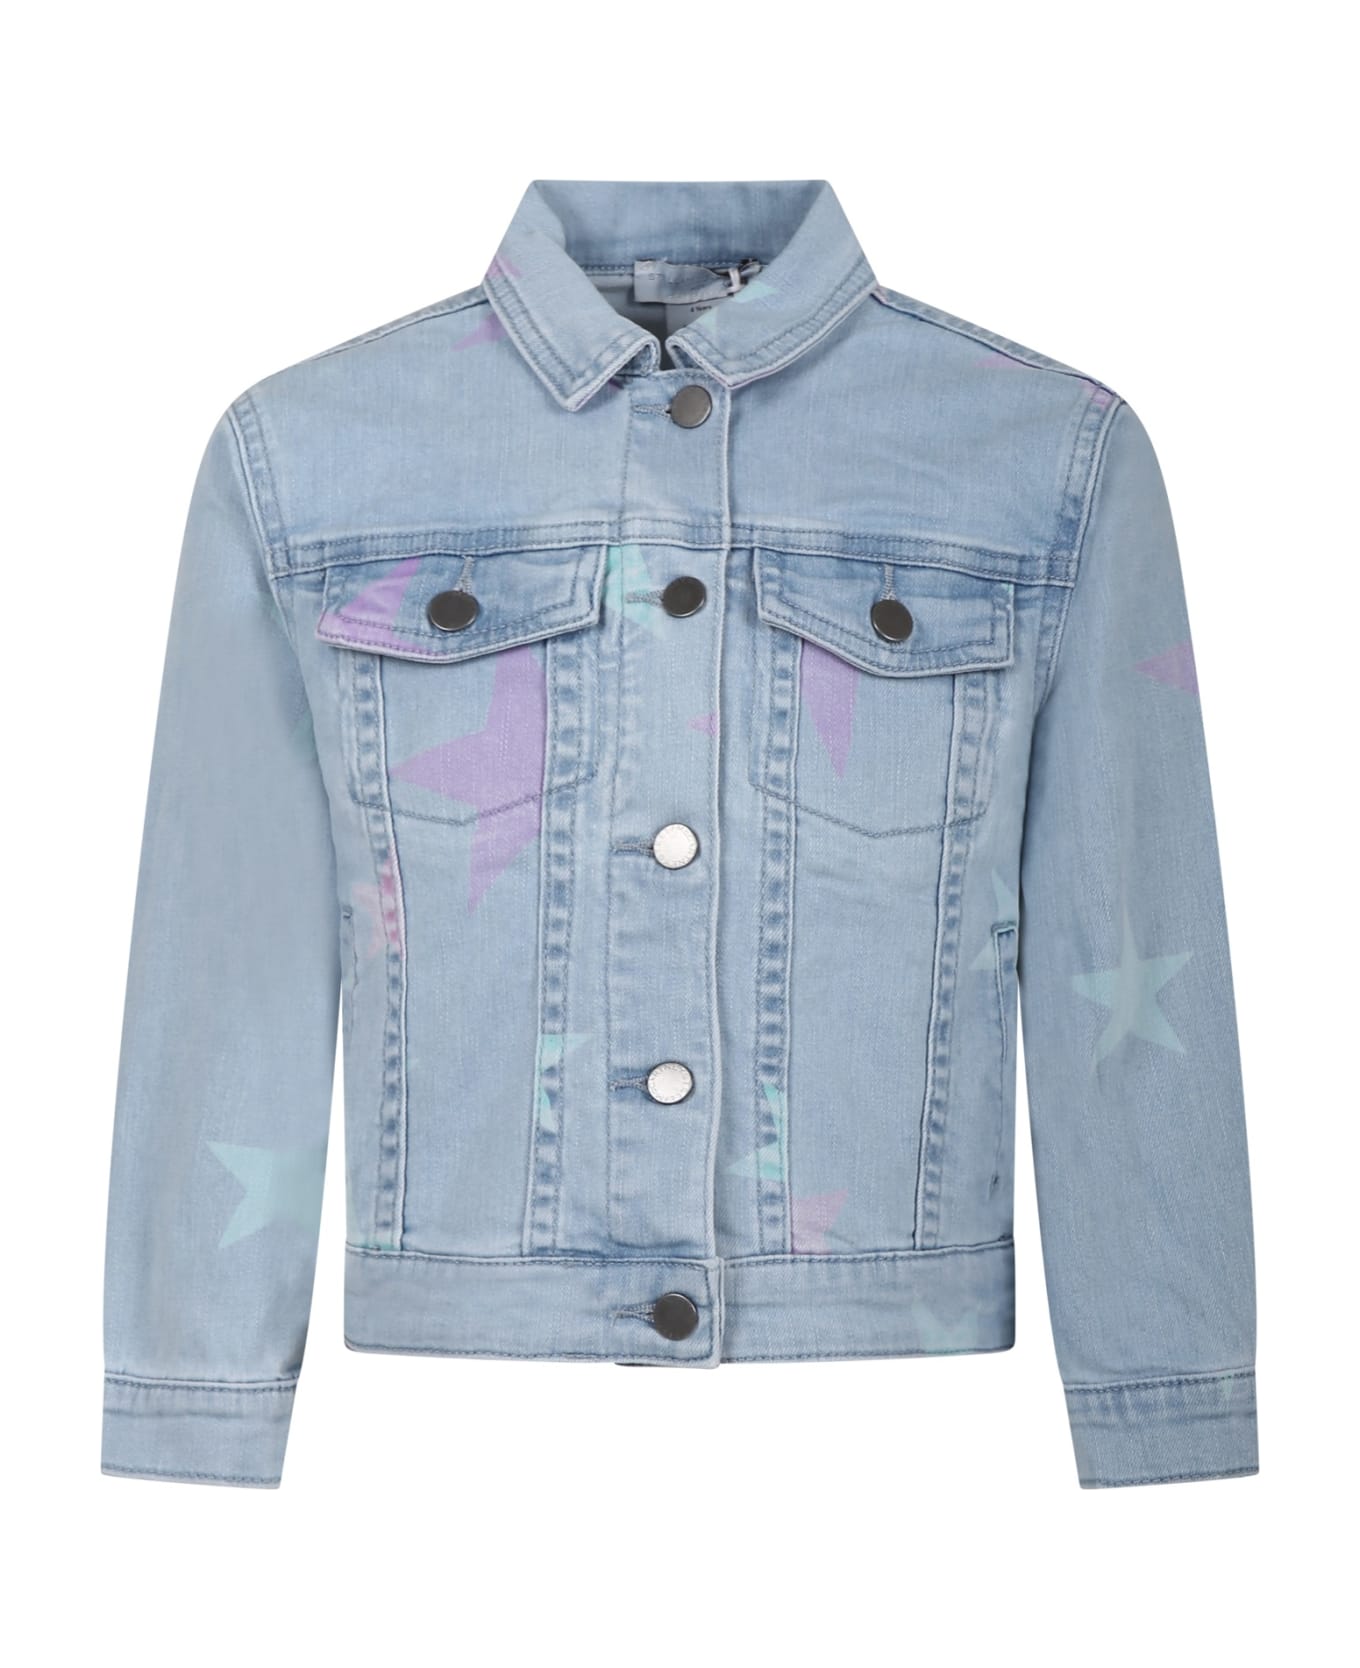 Stella McCartney Kids Denim Jacket For Girl With All-over Stars - Denim